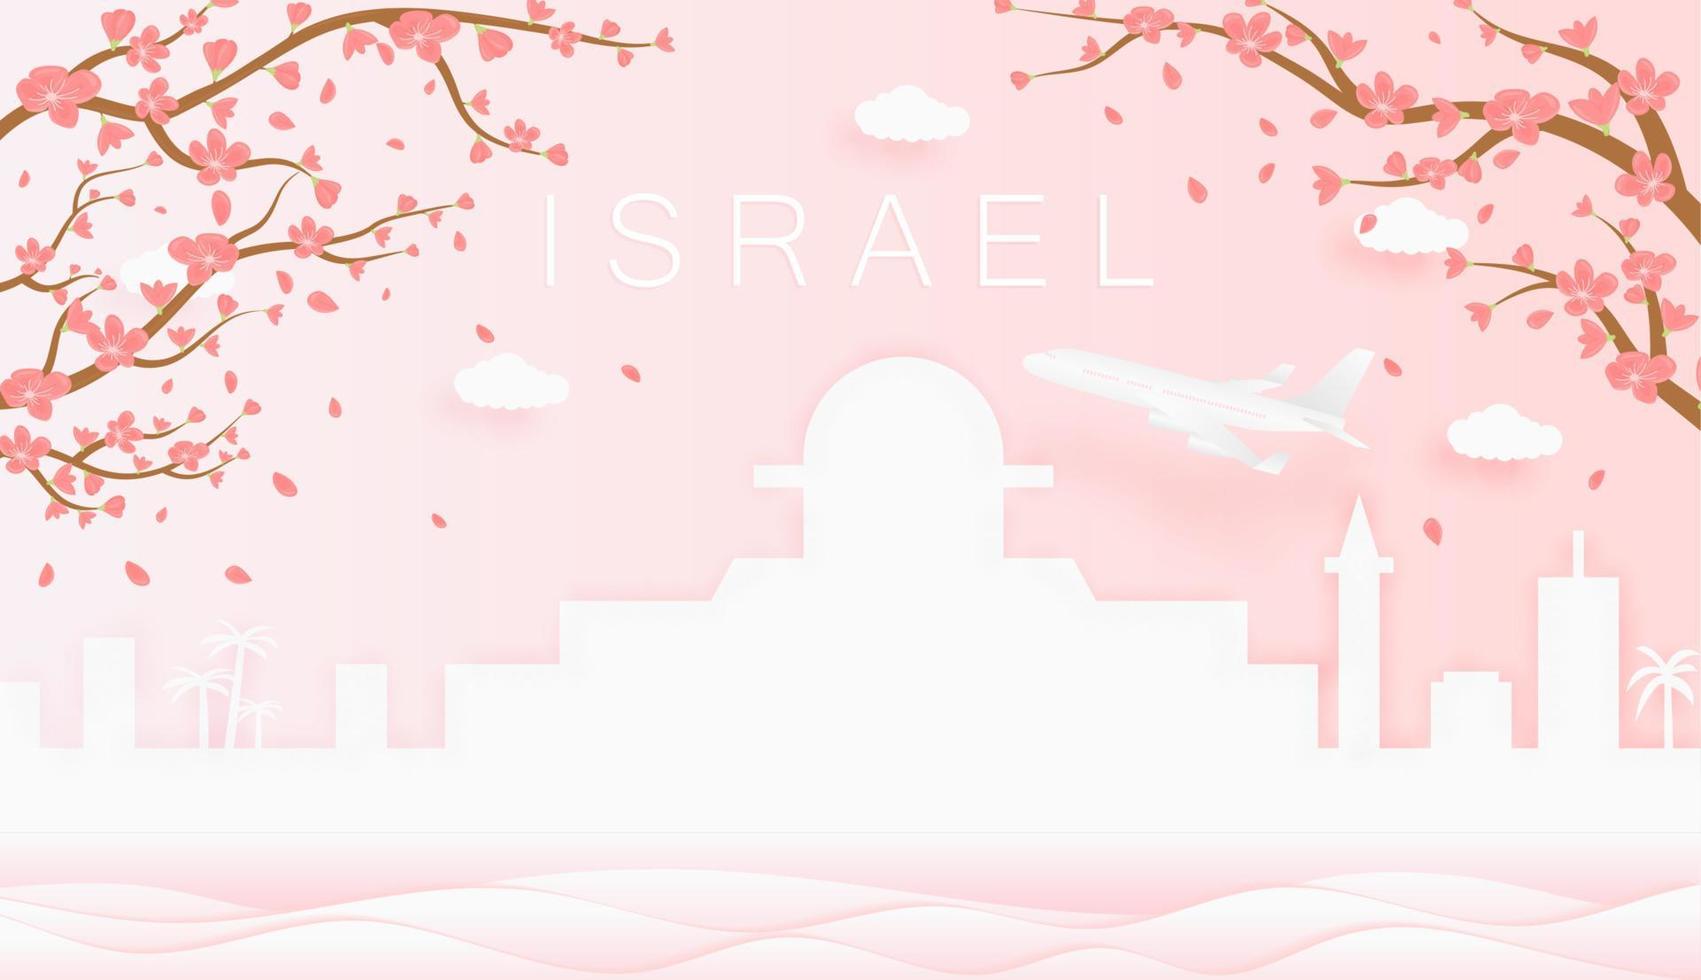 panorama viaje tarjeta postal, póster, excursión publicidad de mundo famoso puntos de referencia de Israel, primavera temporada con floreciente flores en árbol vector